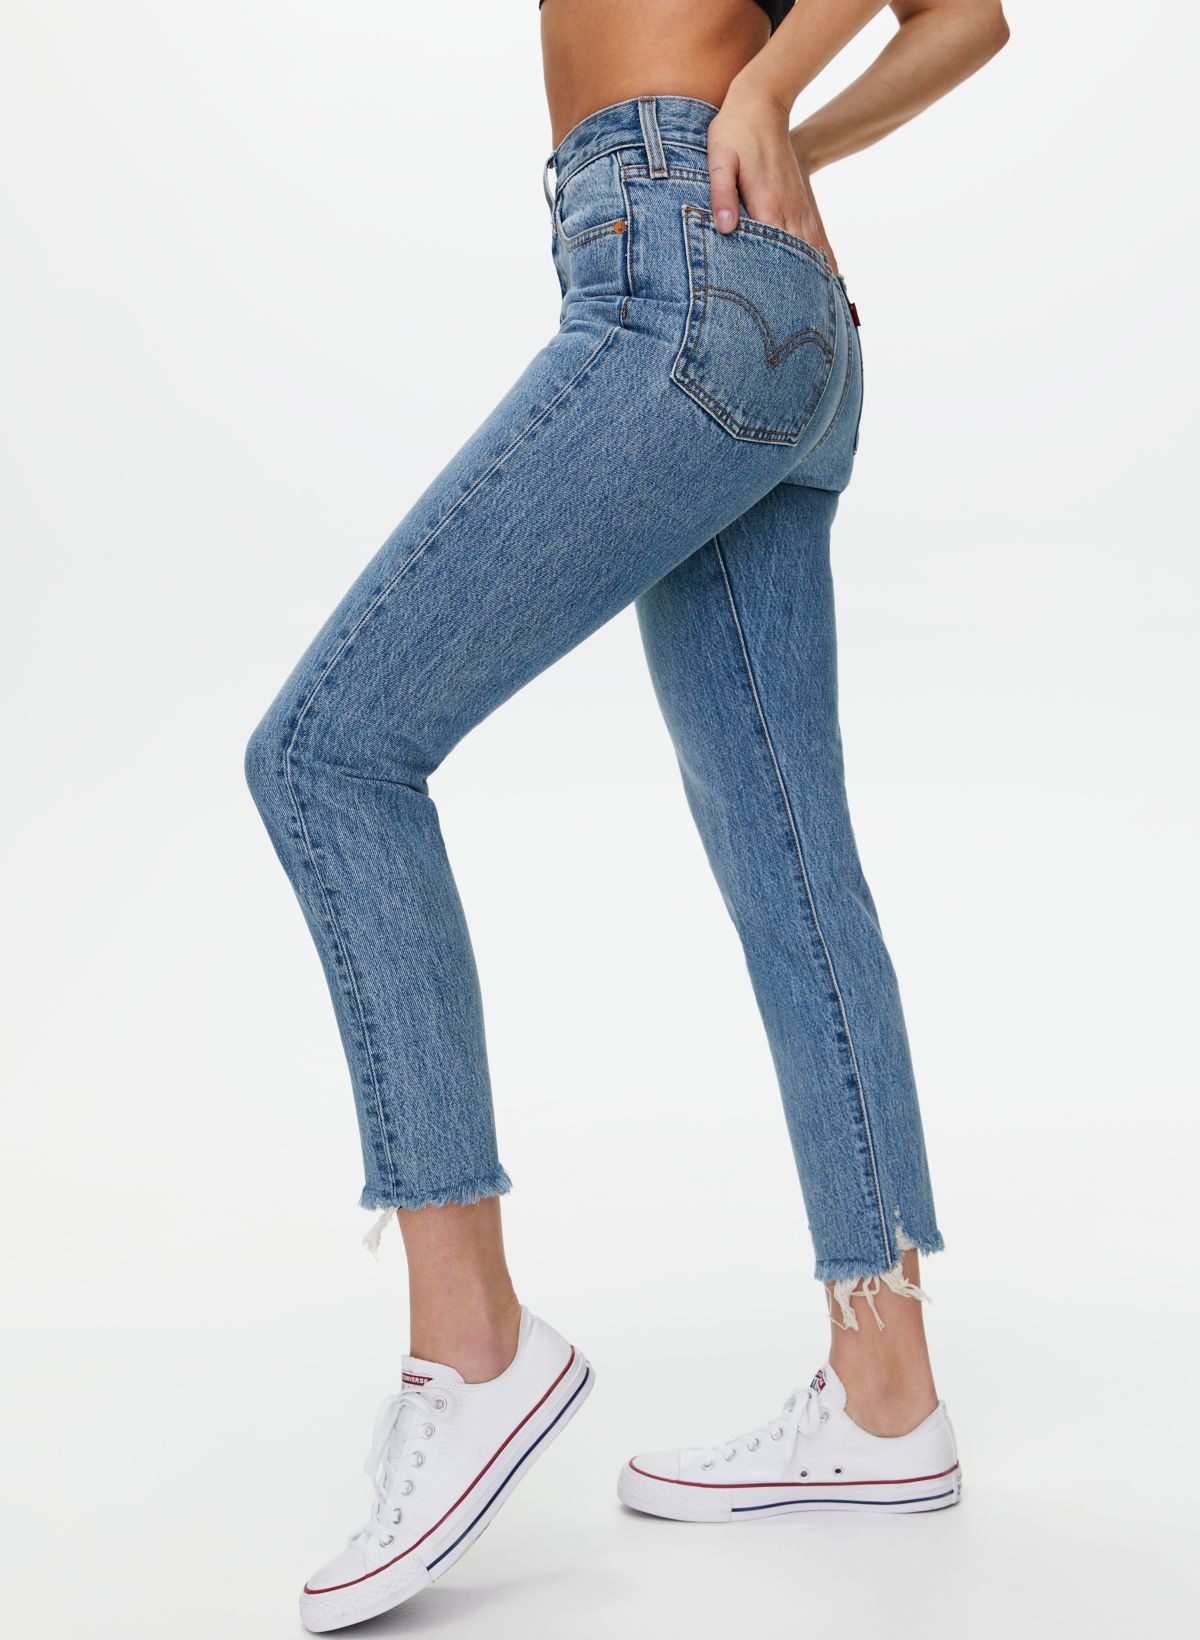 Introducir 54+ imagen levi’s wedgie jeans canada